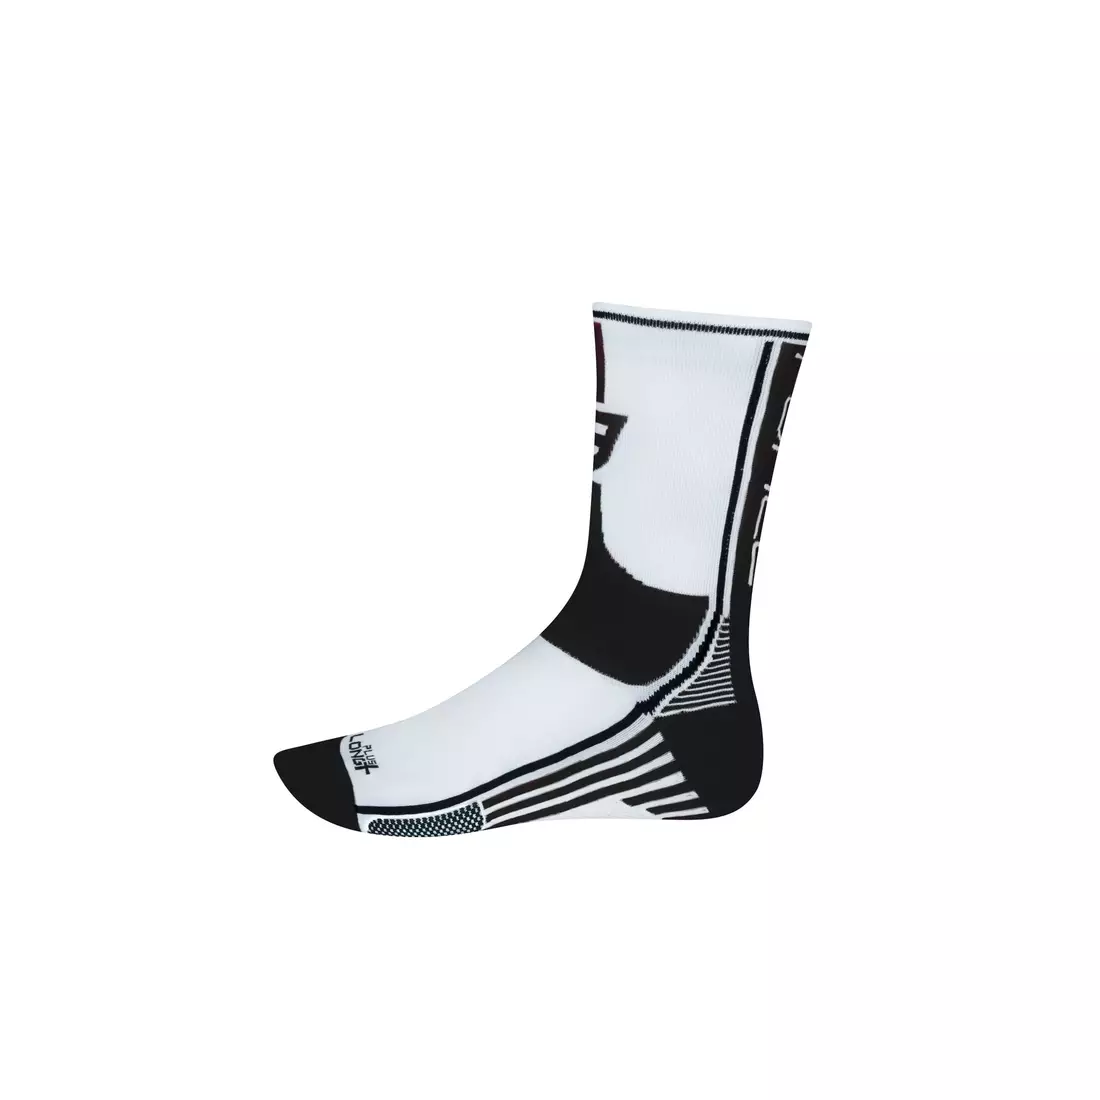 FORCE LONG PLUS ponožky 900954-900964 biele a čierne